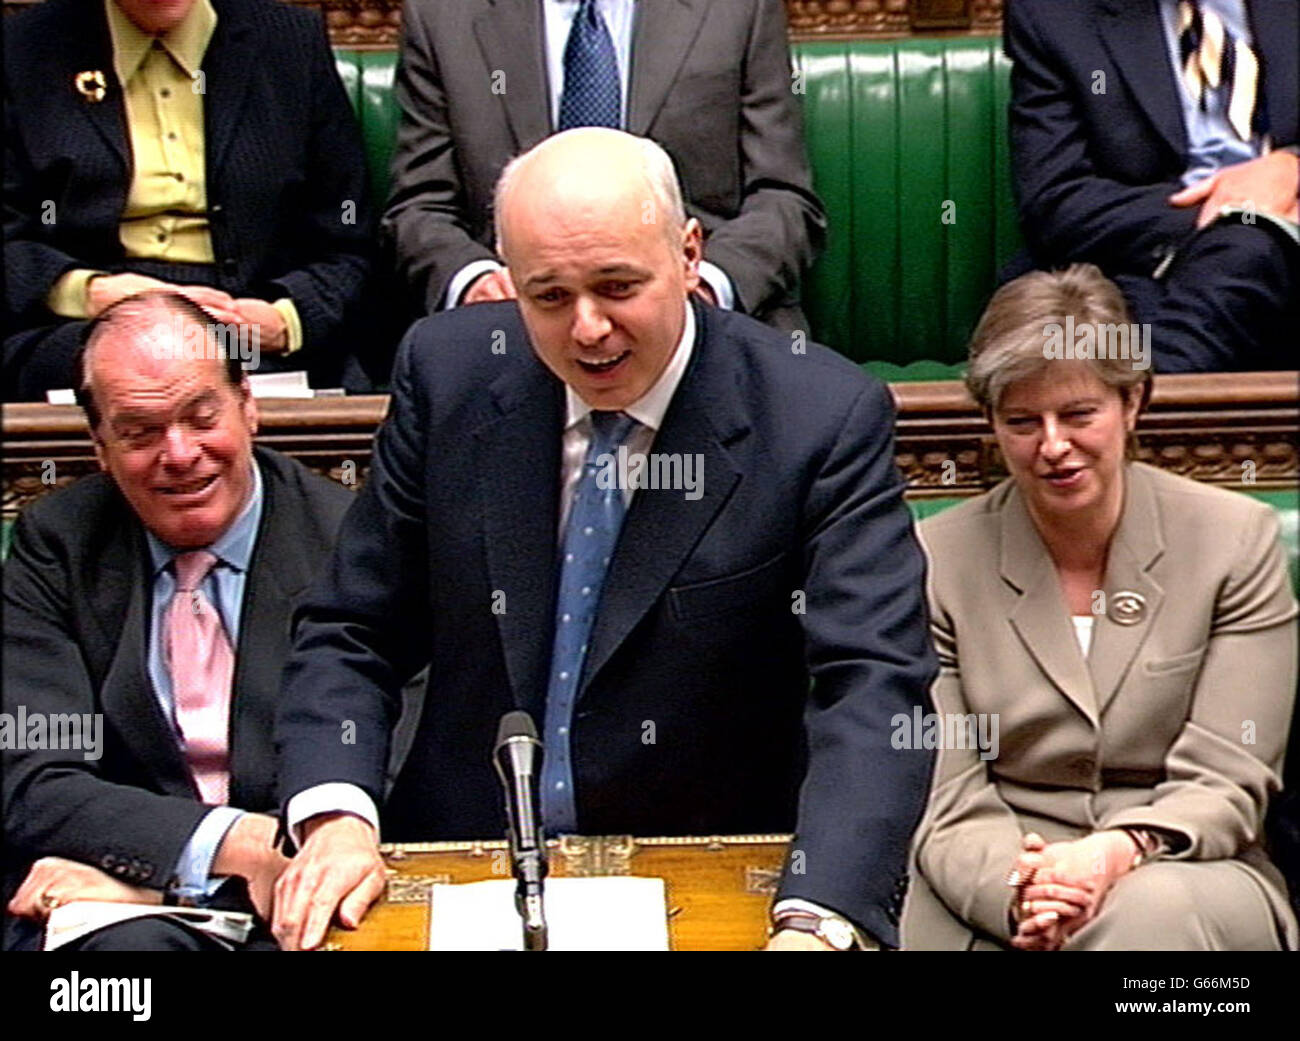 Le chef de l'opposition, Iain Duncan Smith, a parlé pendant les questions du premier ministre à la Chambre des communes, à Londres. Banque D'Images